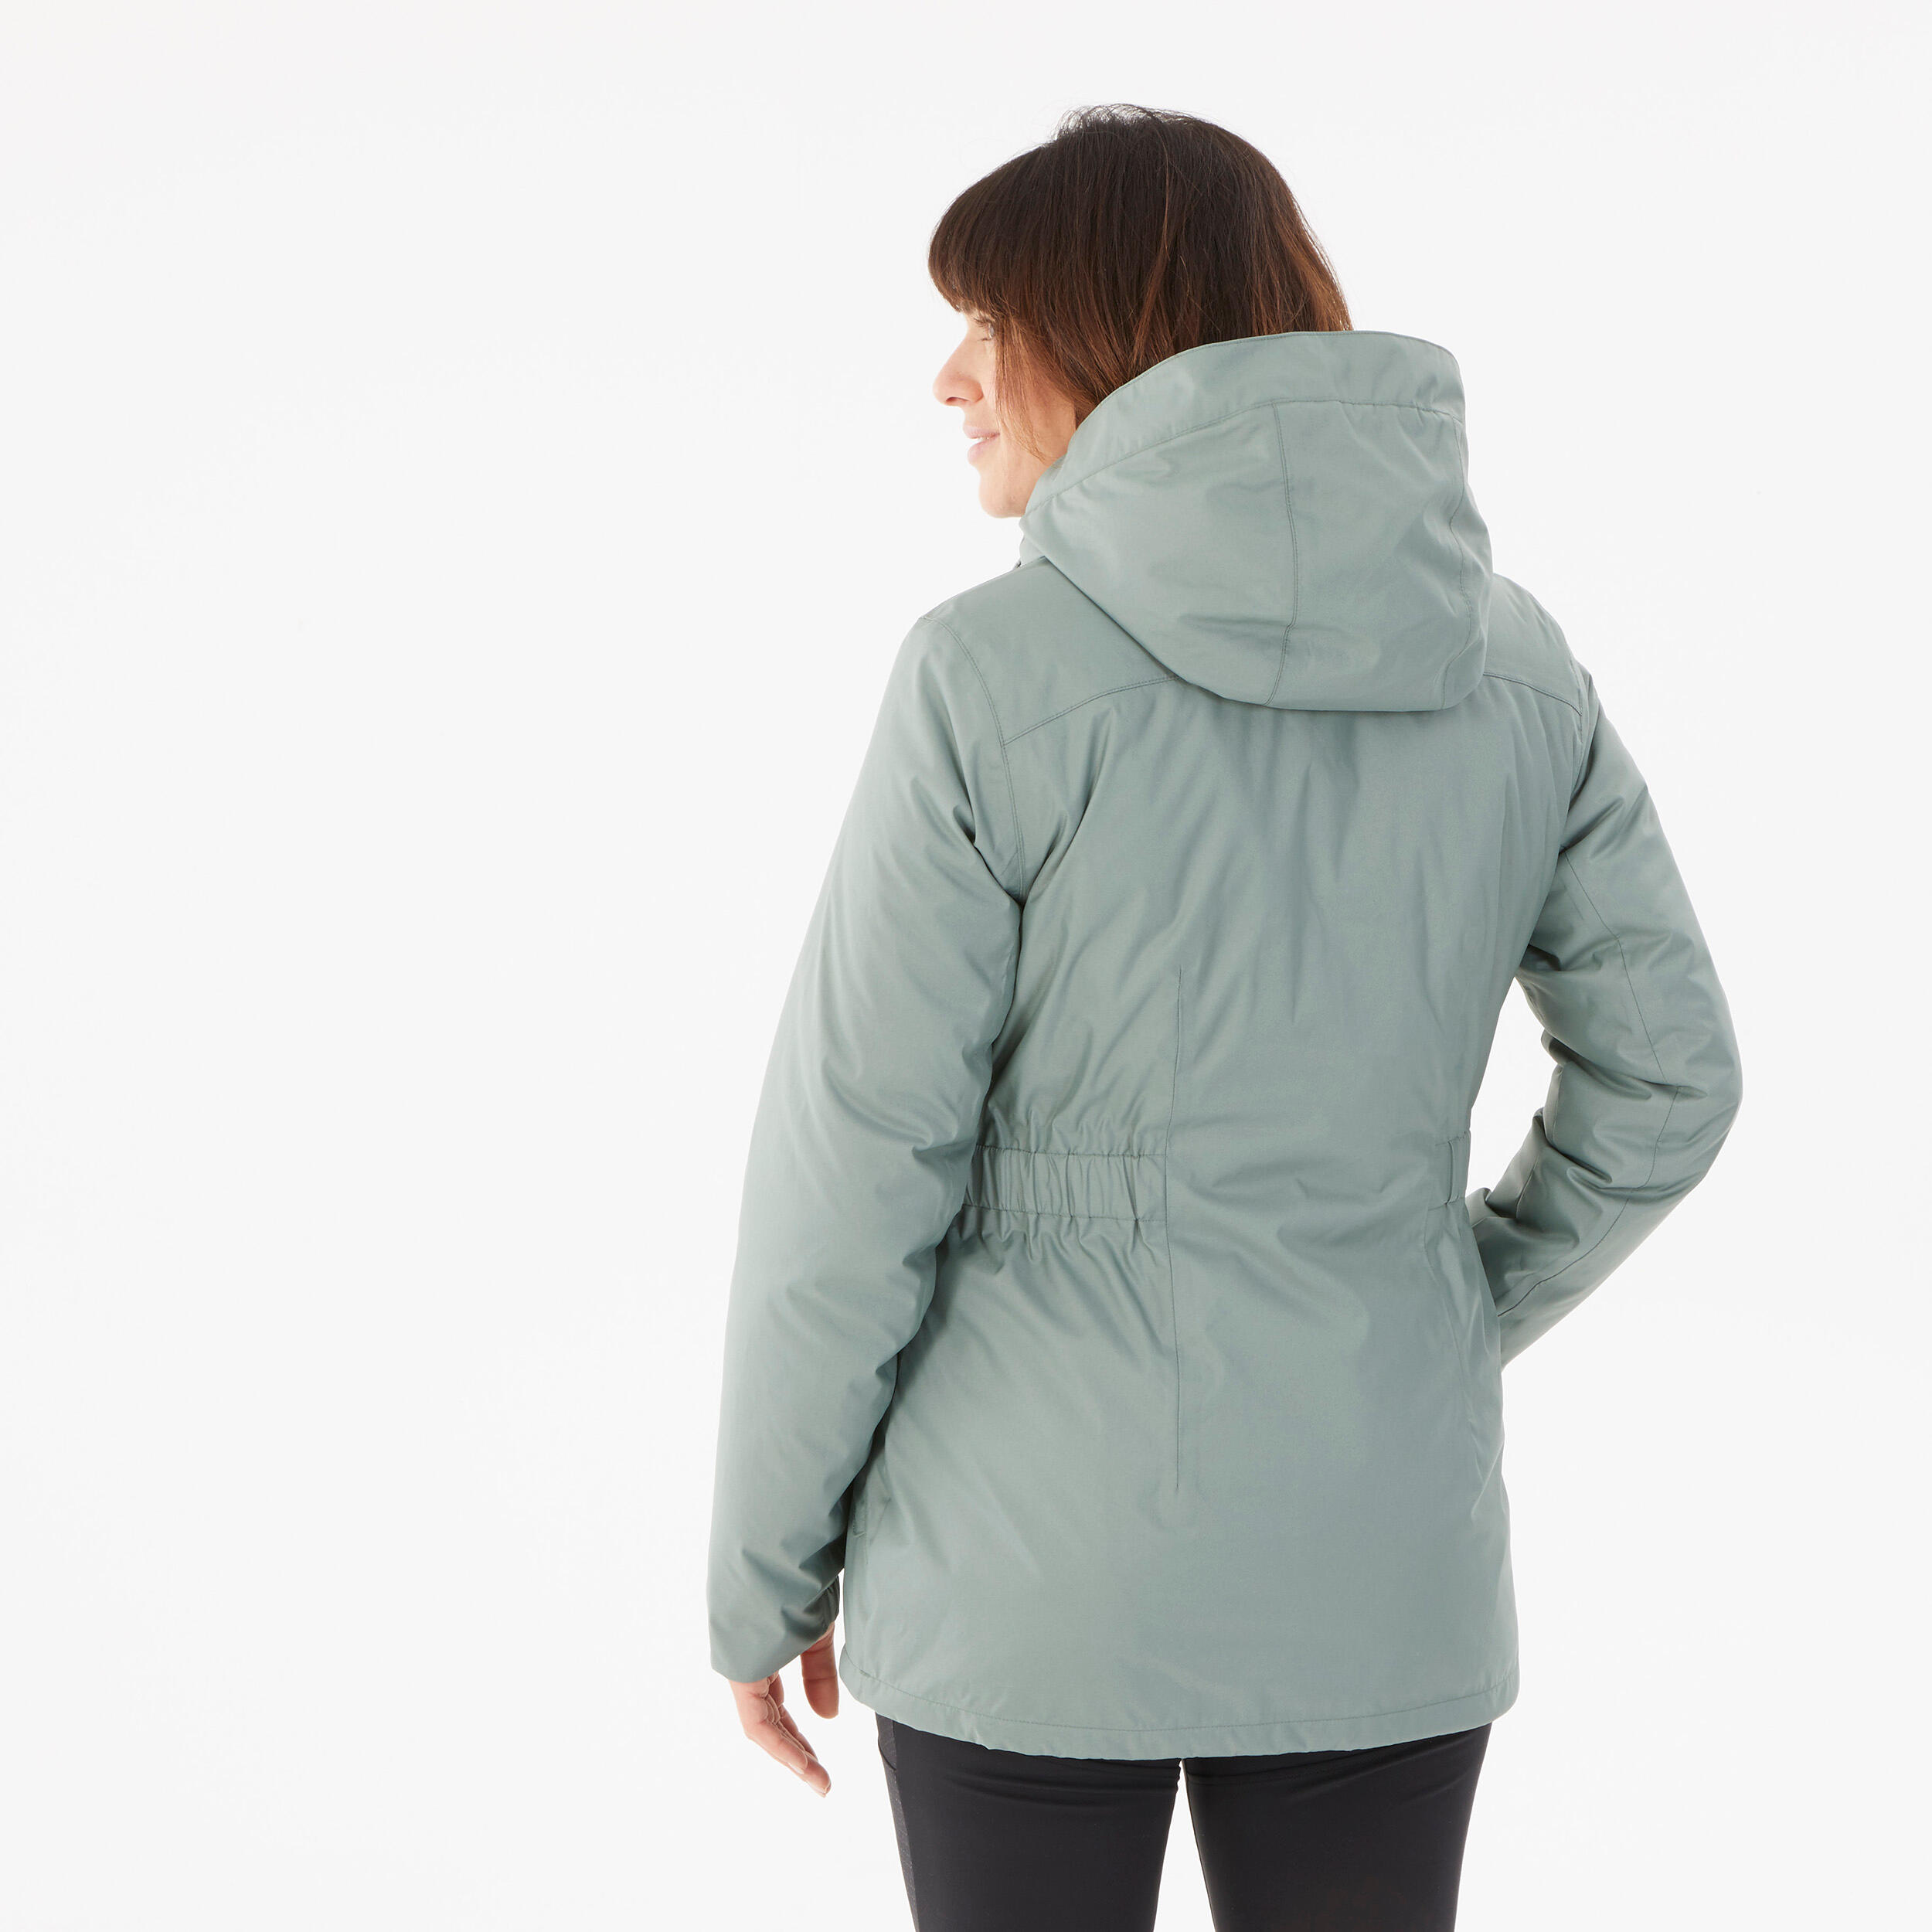 Women’s hiking waterproof winter jacket - SH500 -10°C 5/10